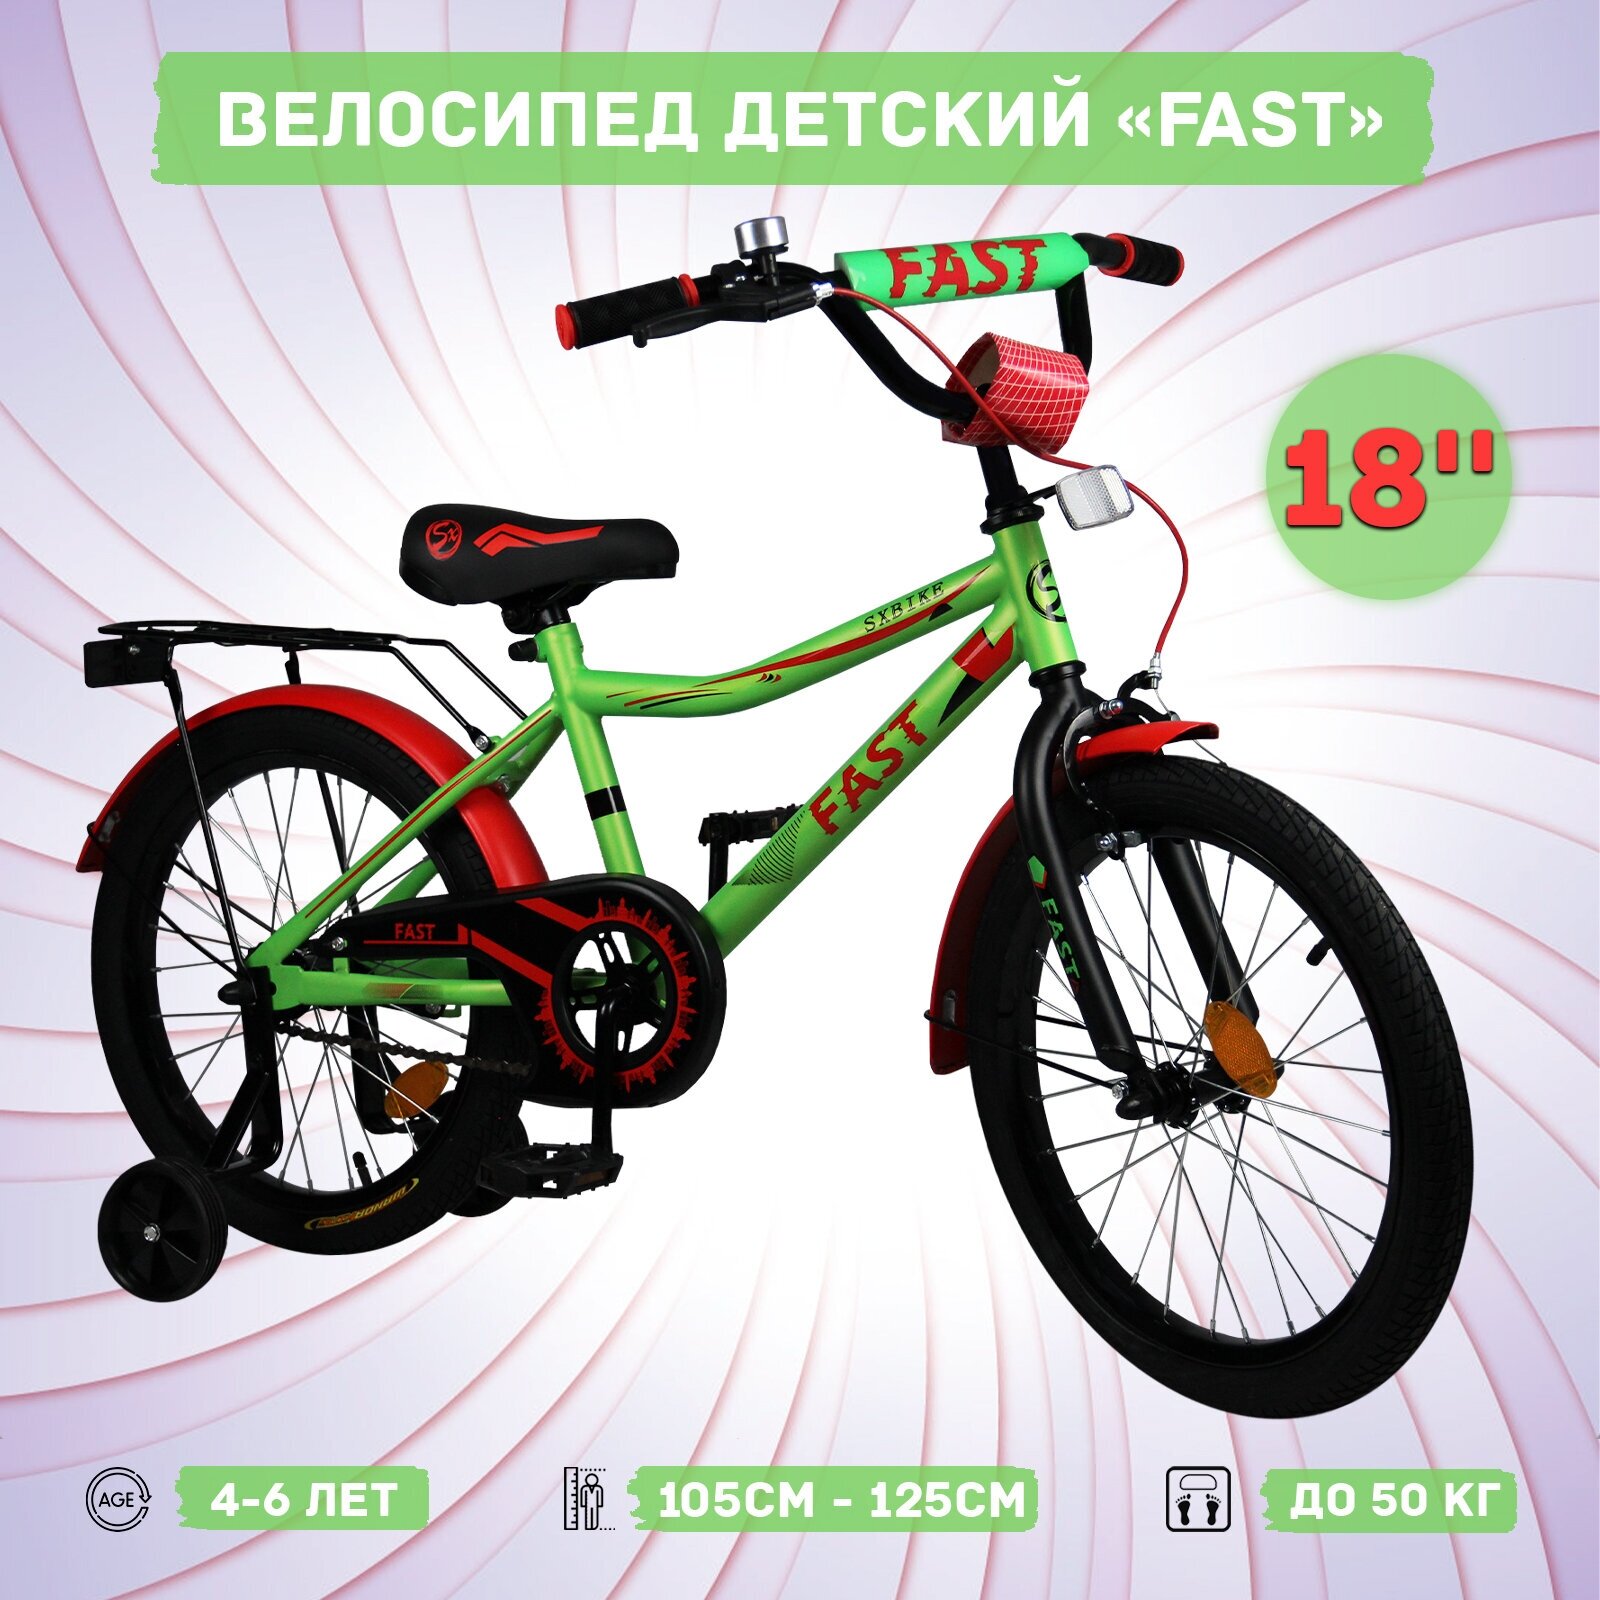 Велосипед детский Sx Bike Fast 18", зелено-красный